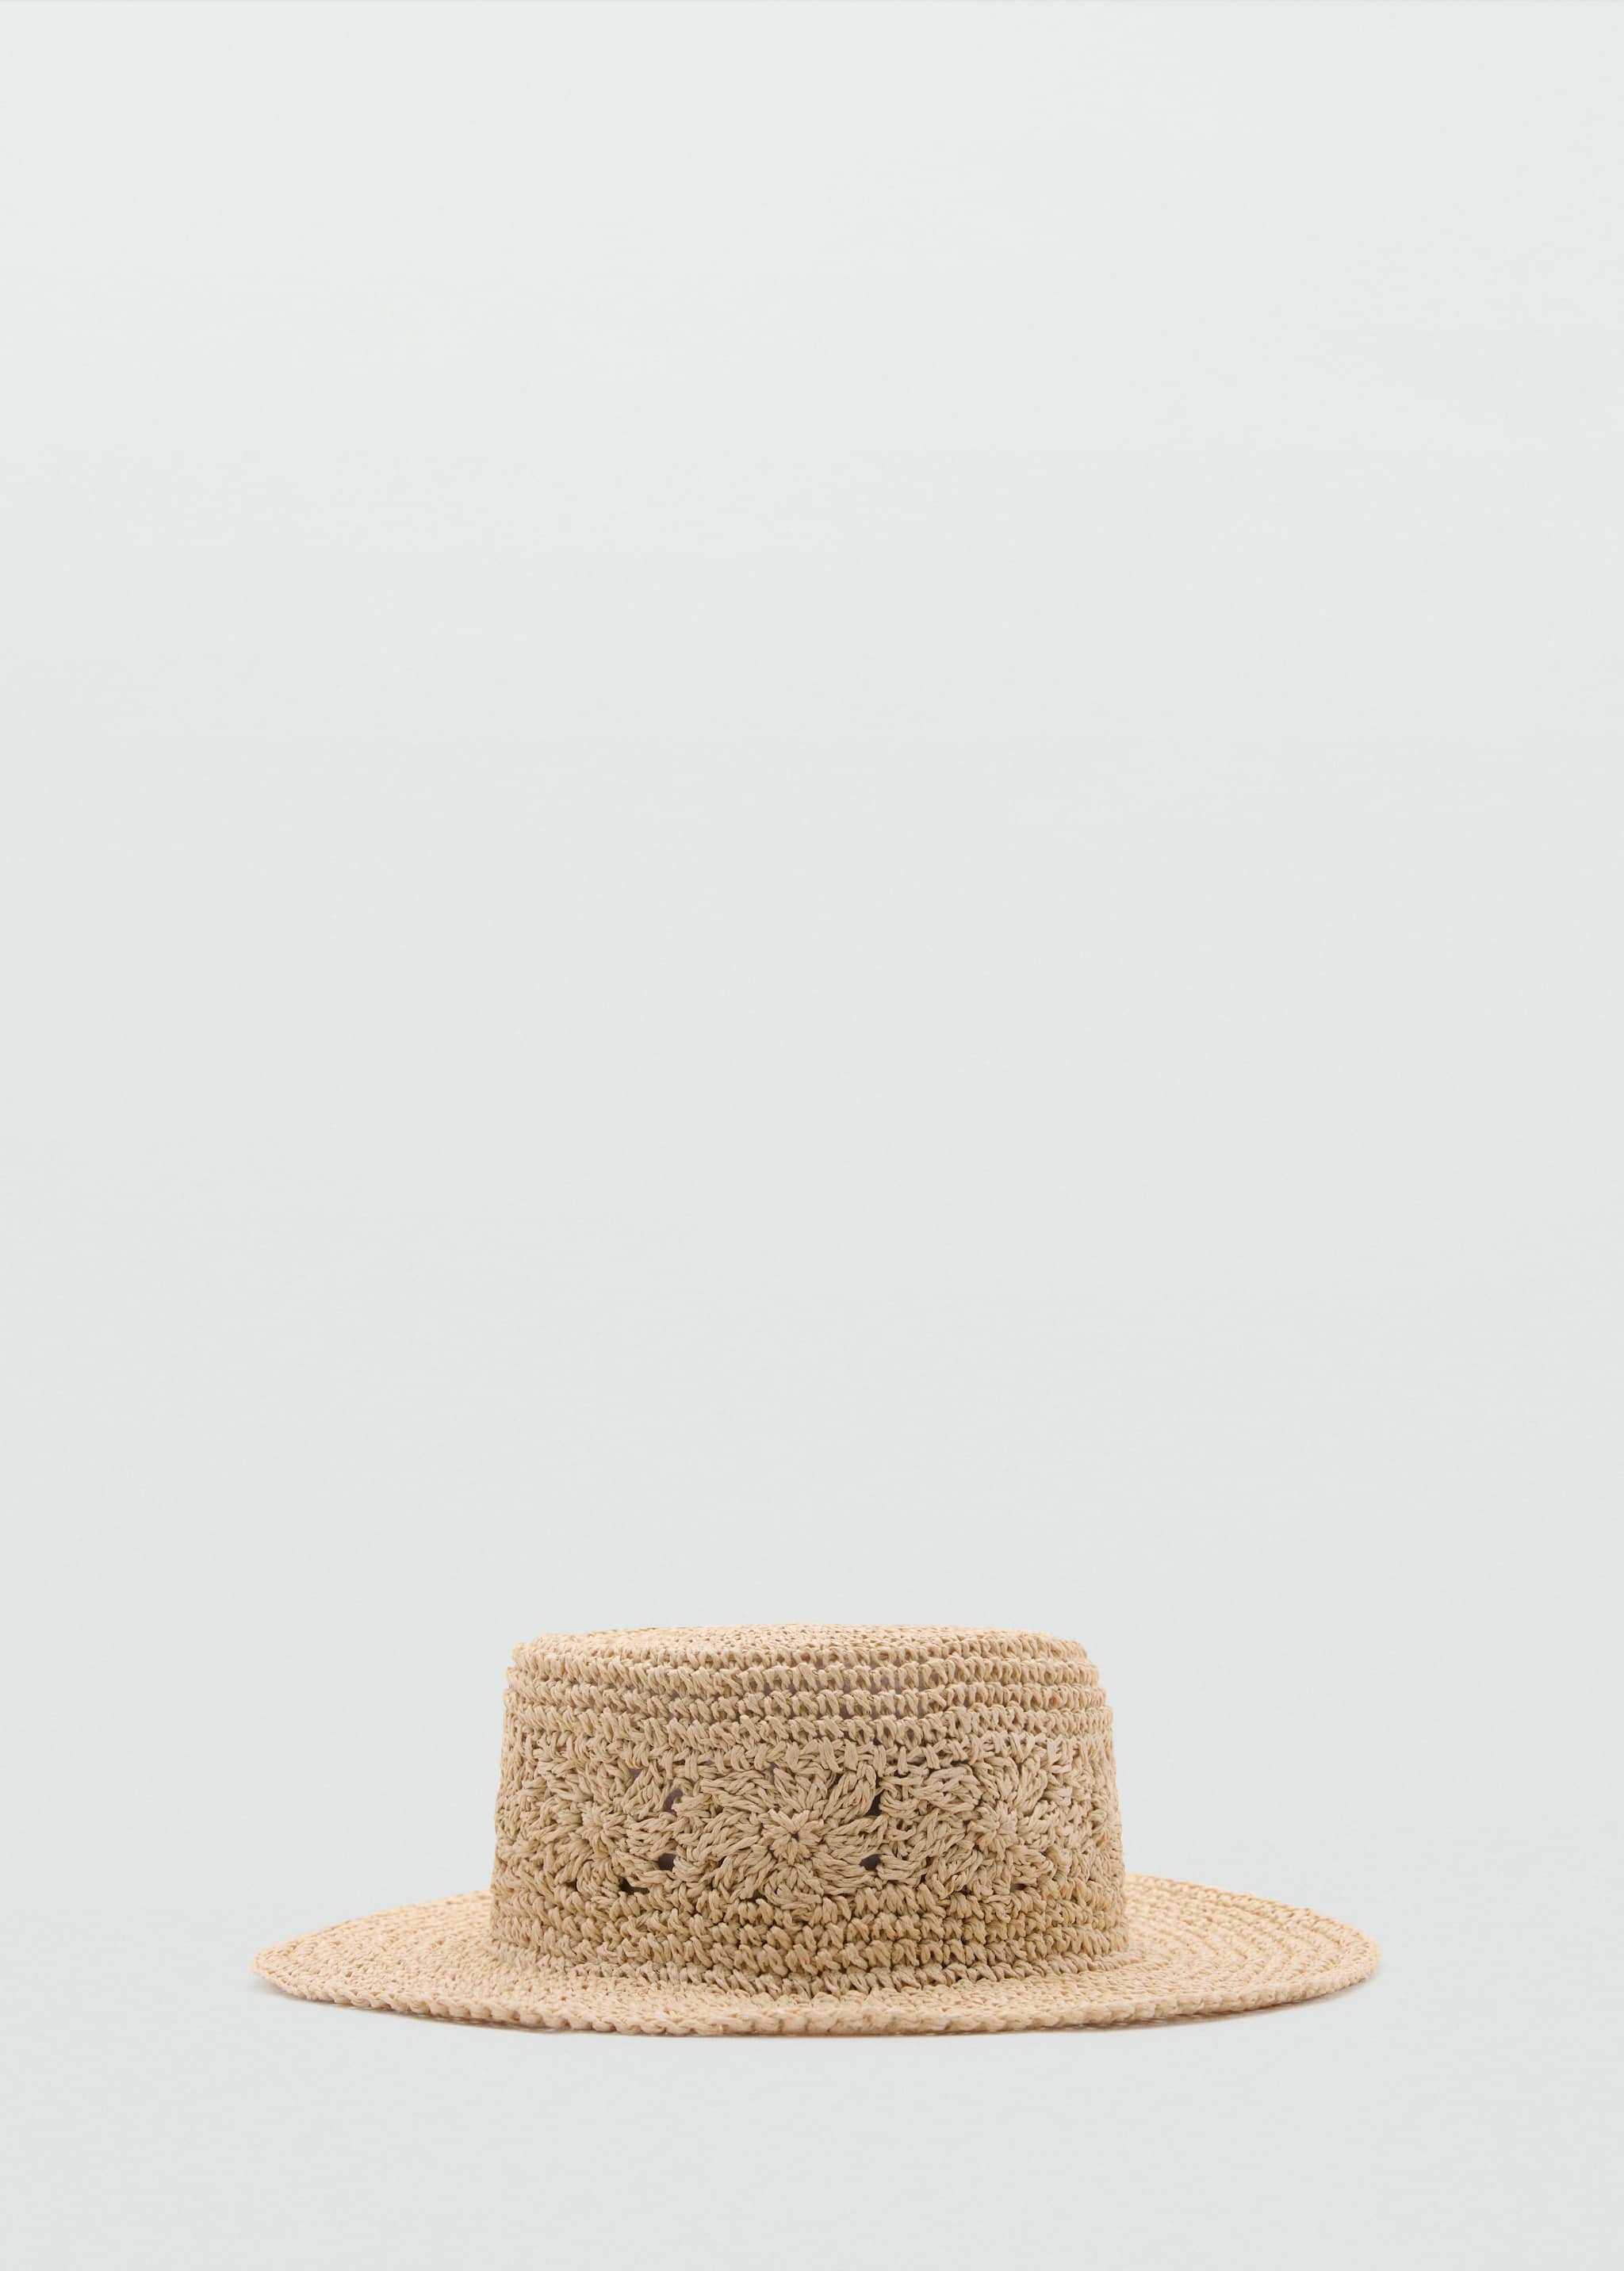 Шляпа из натурального волокна - Изделие без модели